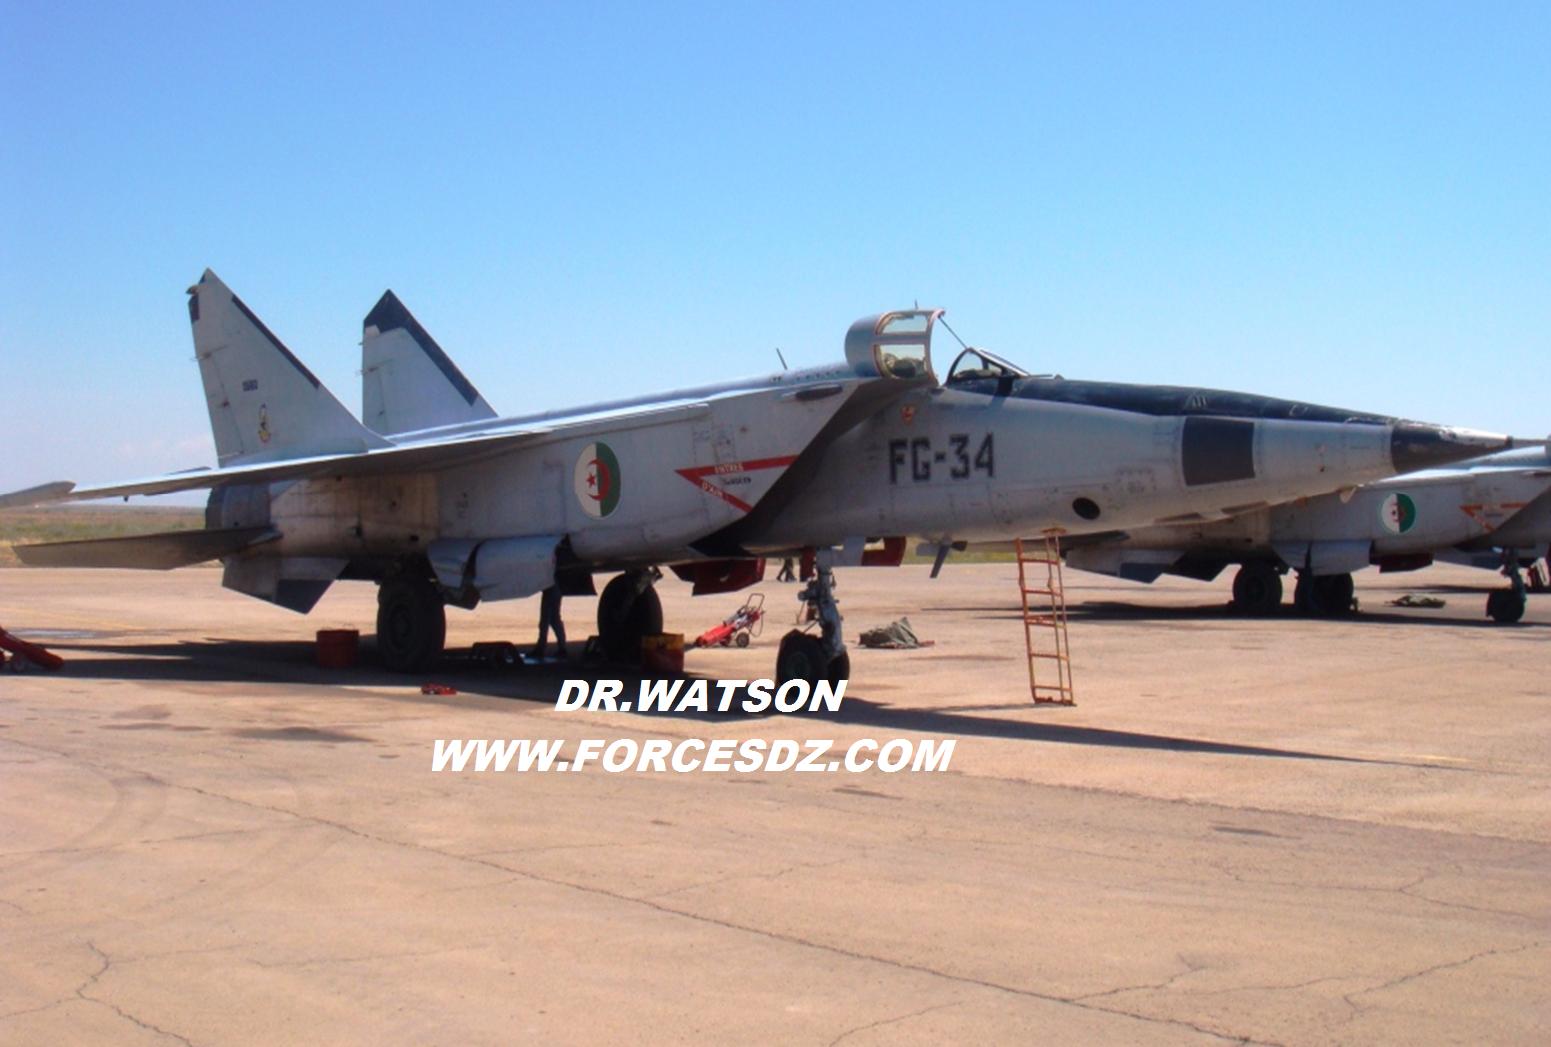 صور طائرات القوات الجوية الجزائرية [ MIG-25 / Foxbat ] - صفحة 3 013oq